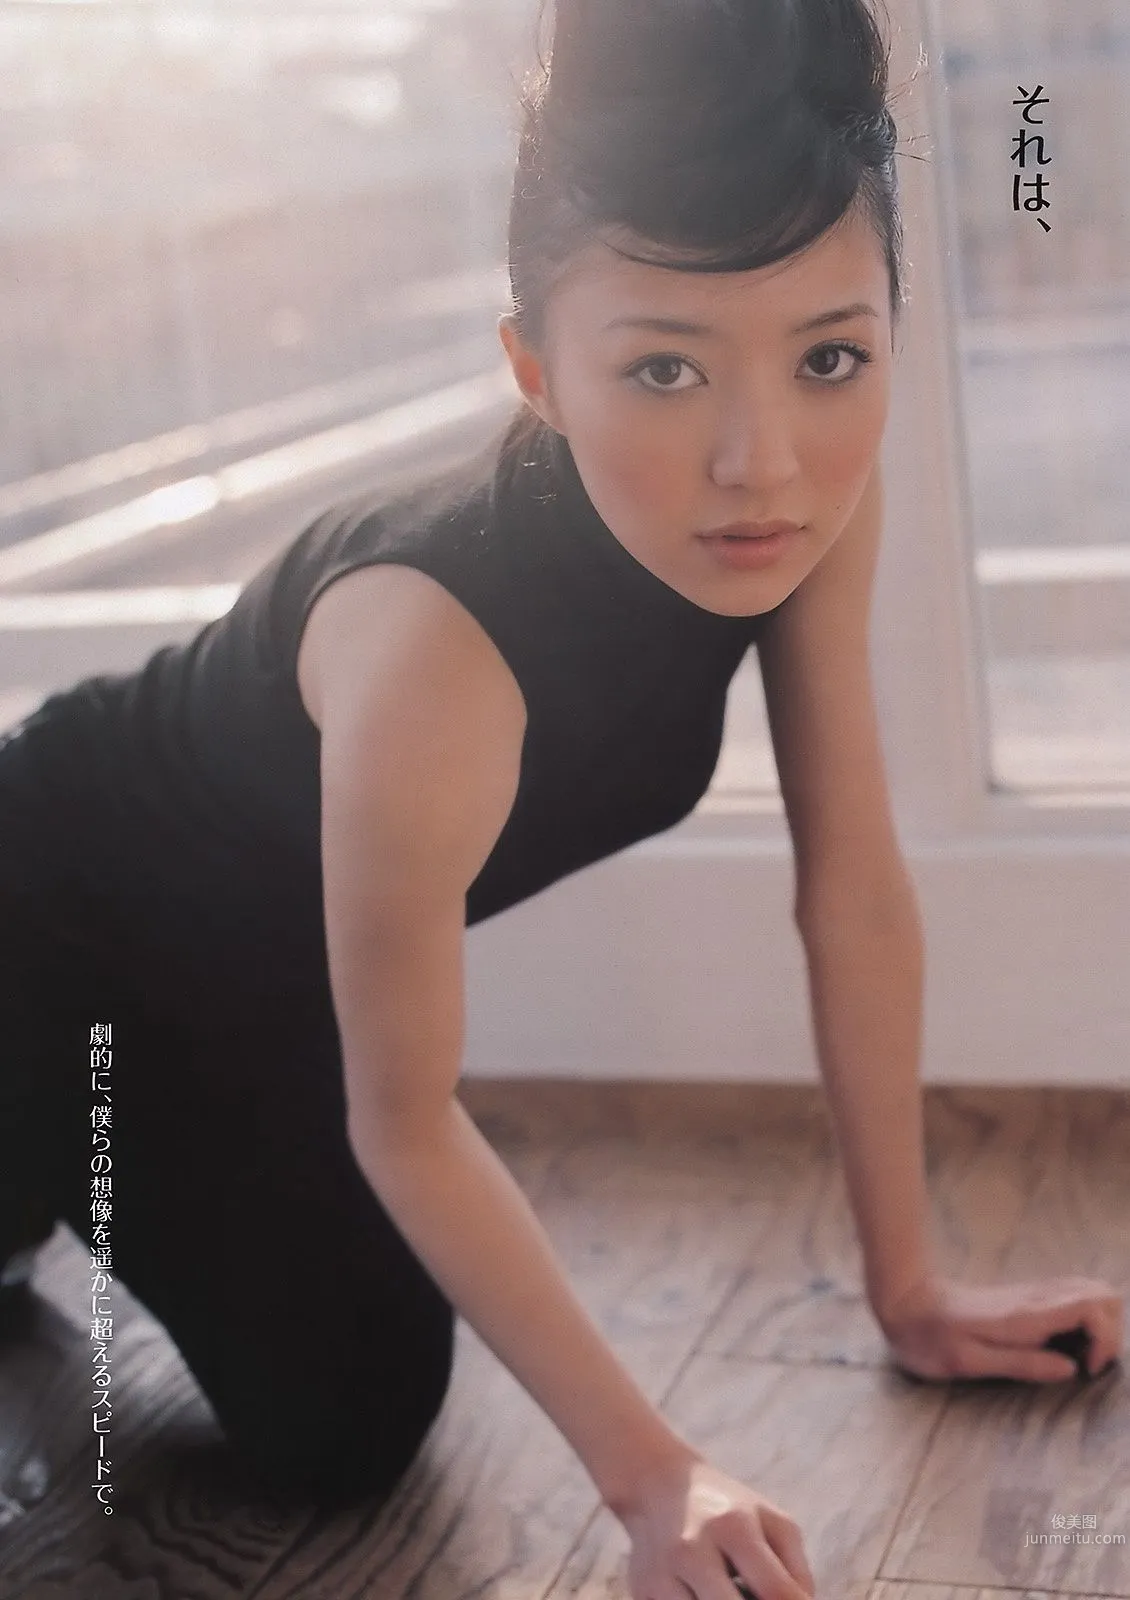 佐々木希 逢沢りな 次原かな NMB48 おかもとまり [Weekly Playboy] 2011年No.11 写真杂志11